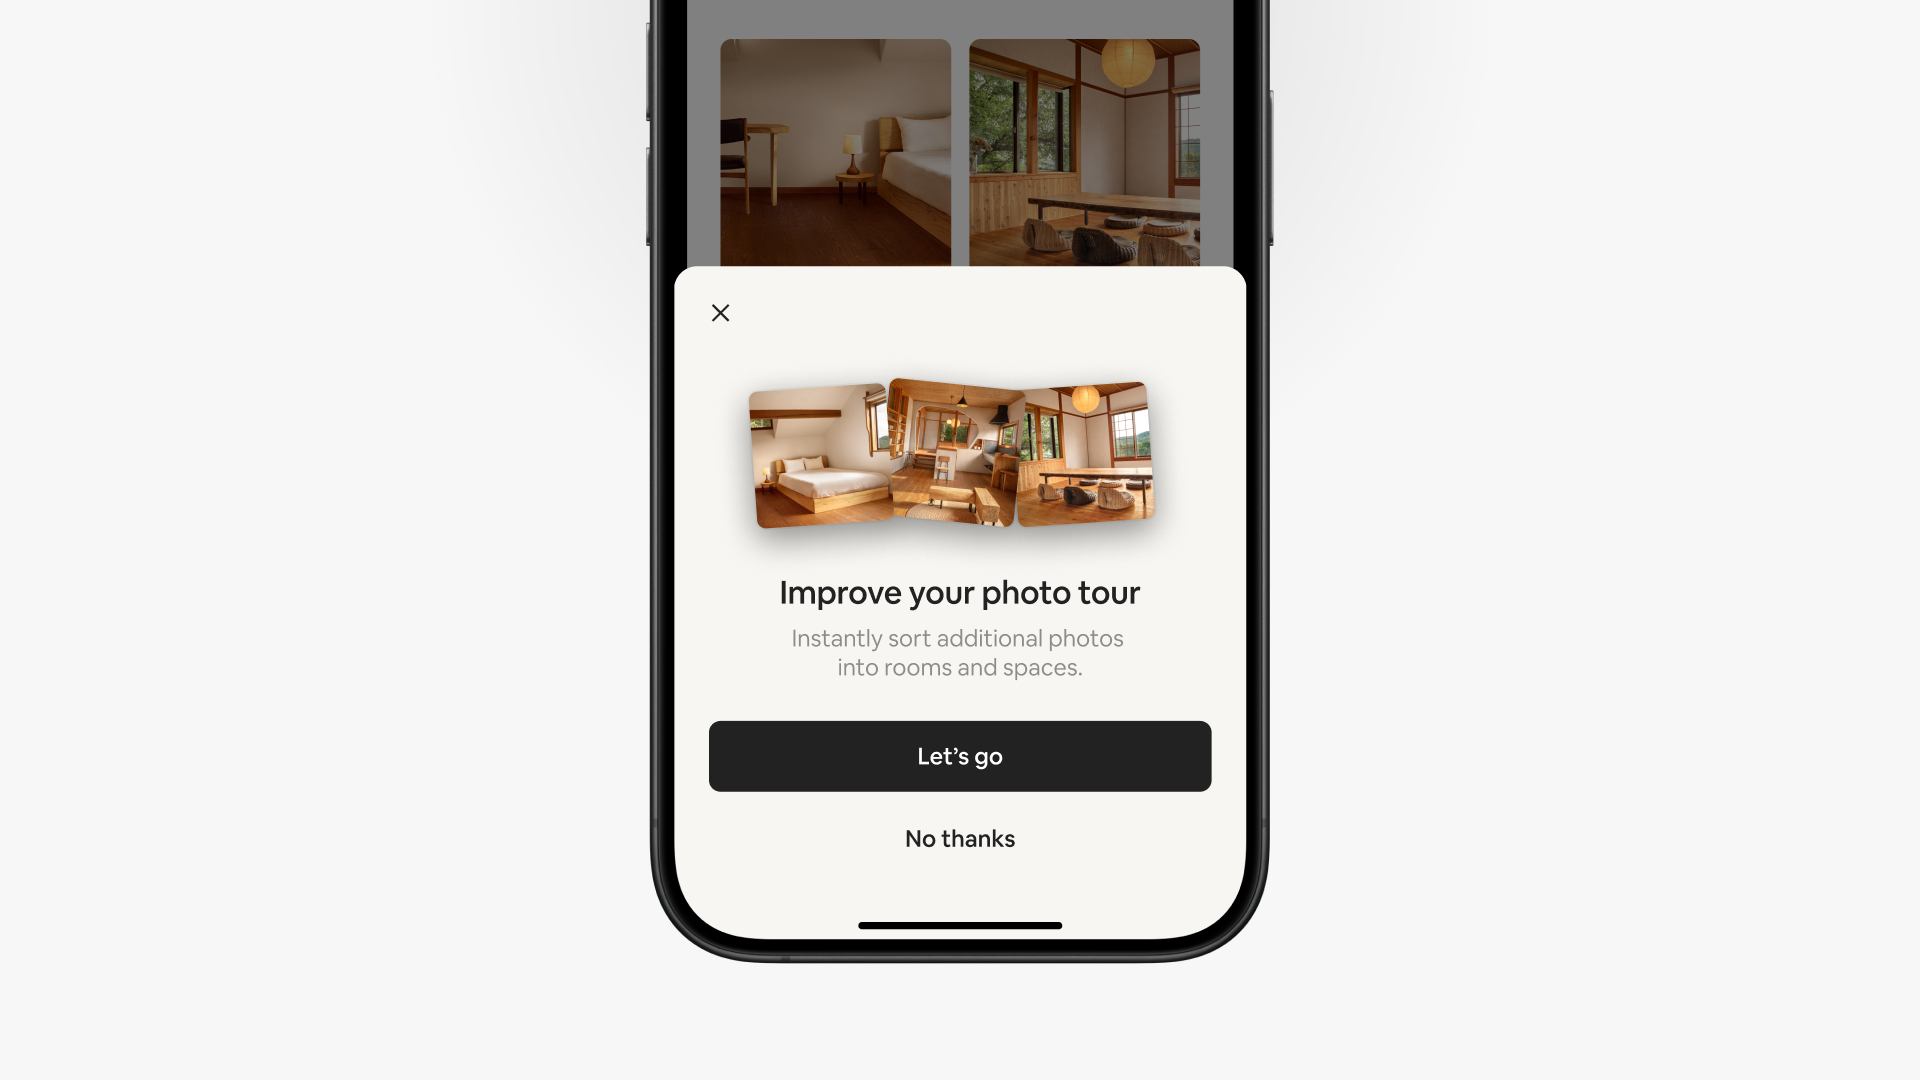 W aplikacji Airbnb pojawia się wyskakujące okienko z napisem „Ulepsz swoją fotowycieczkę”. Poniżej widać dwie opcje na przyciskach: „Zaczynamy” i „Nie, dziękuję”.